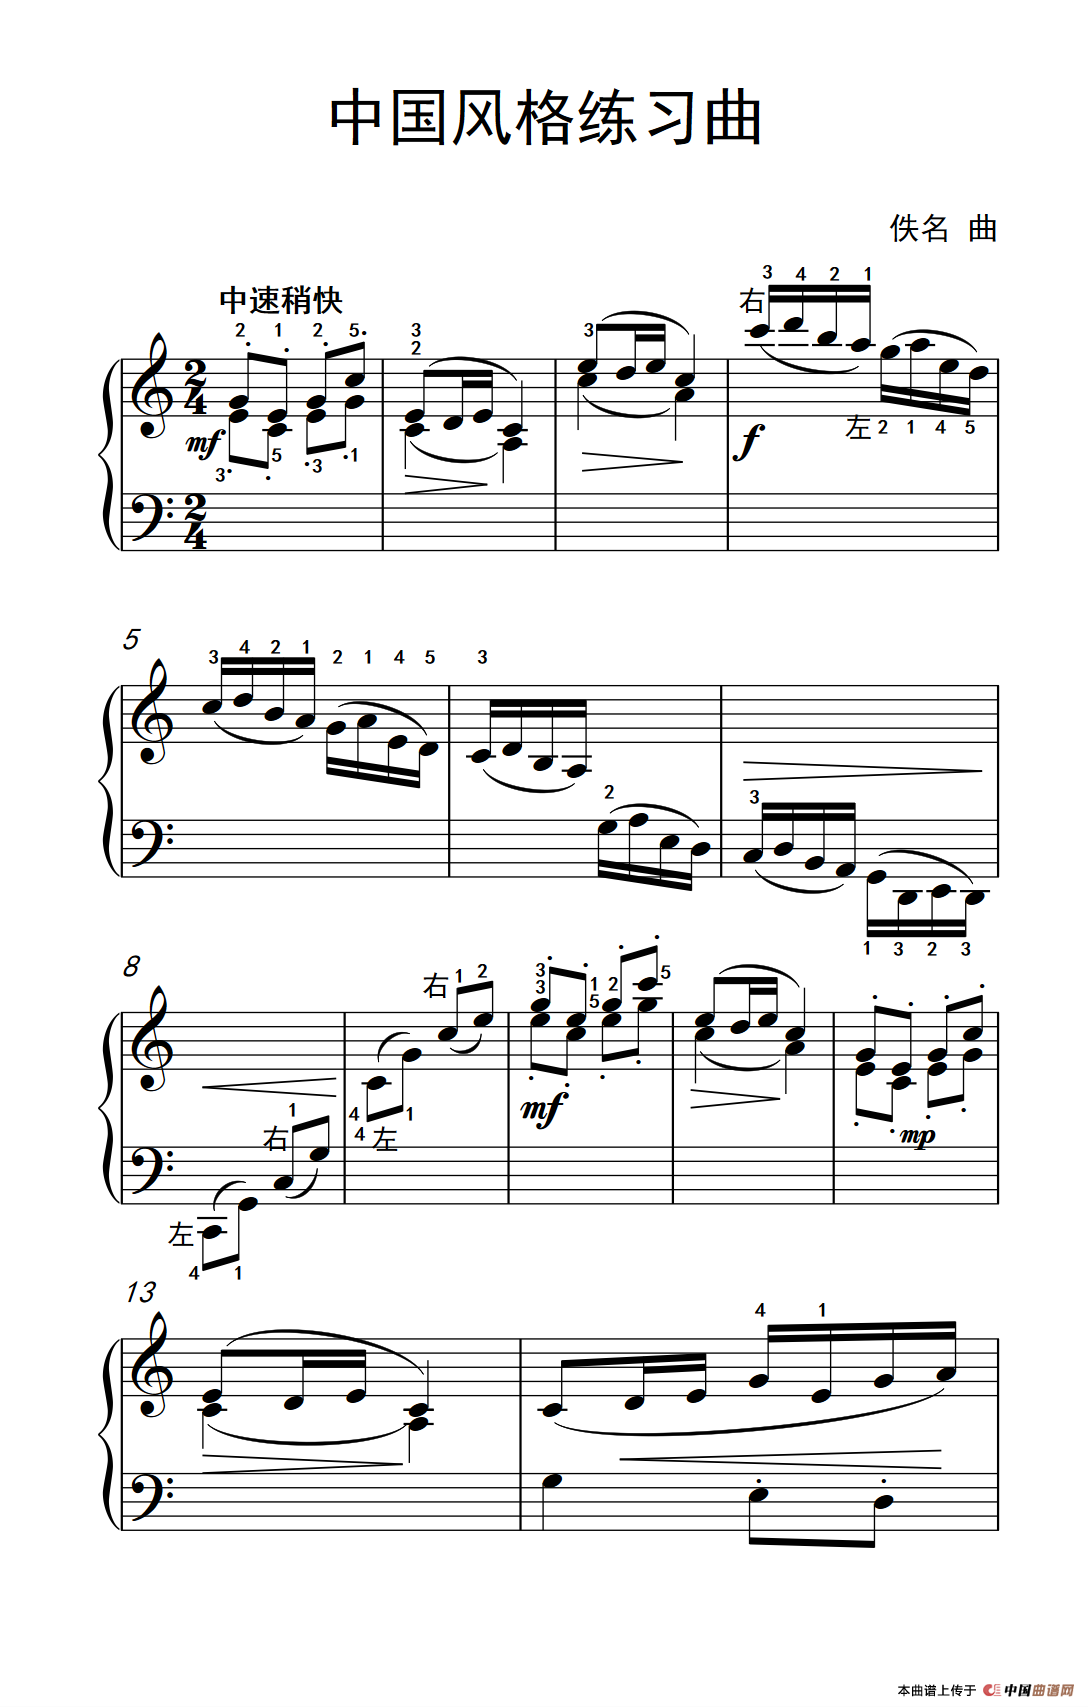 《中国风格练习曲》钢琴曲谱图分享